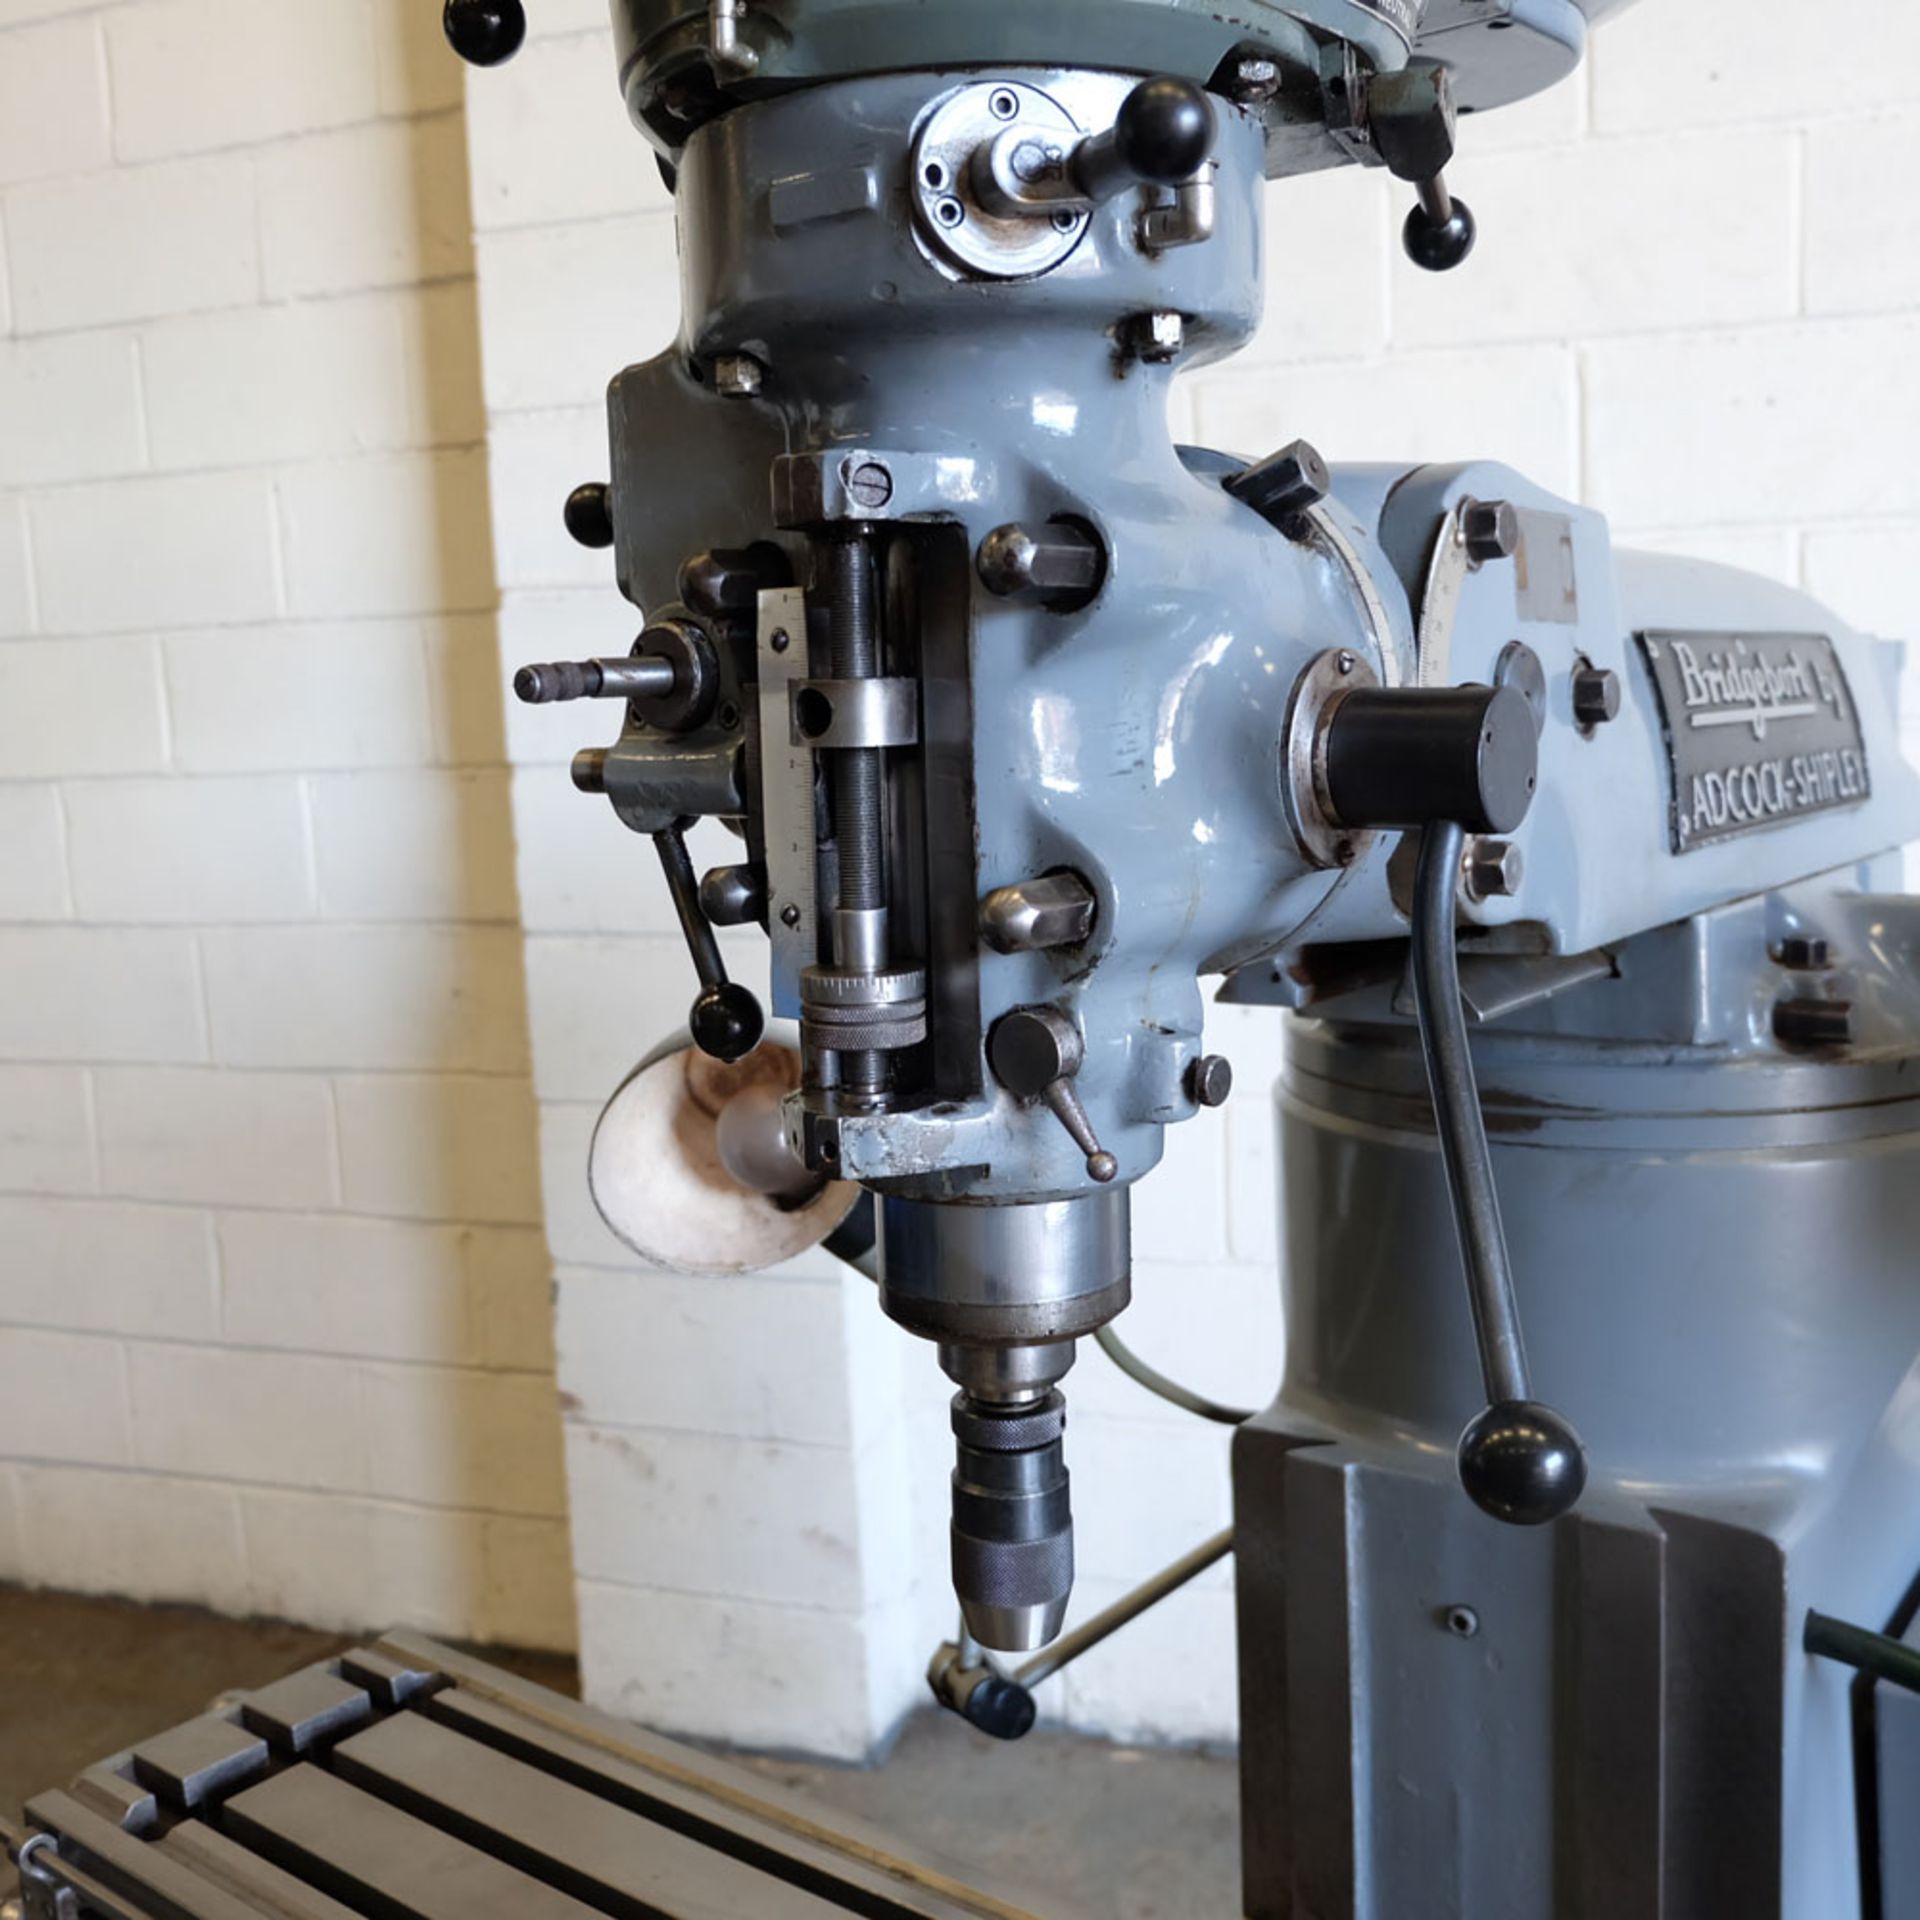 Bridgeport Variable Speed Tool Room Turret Milling Machine. - Image 8 of 12